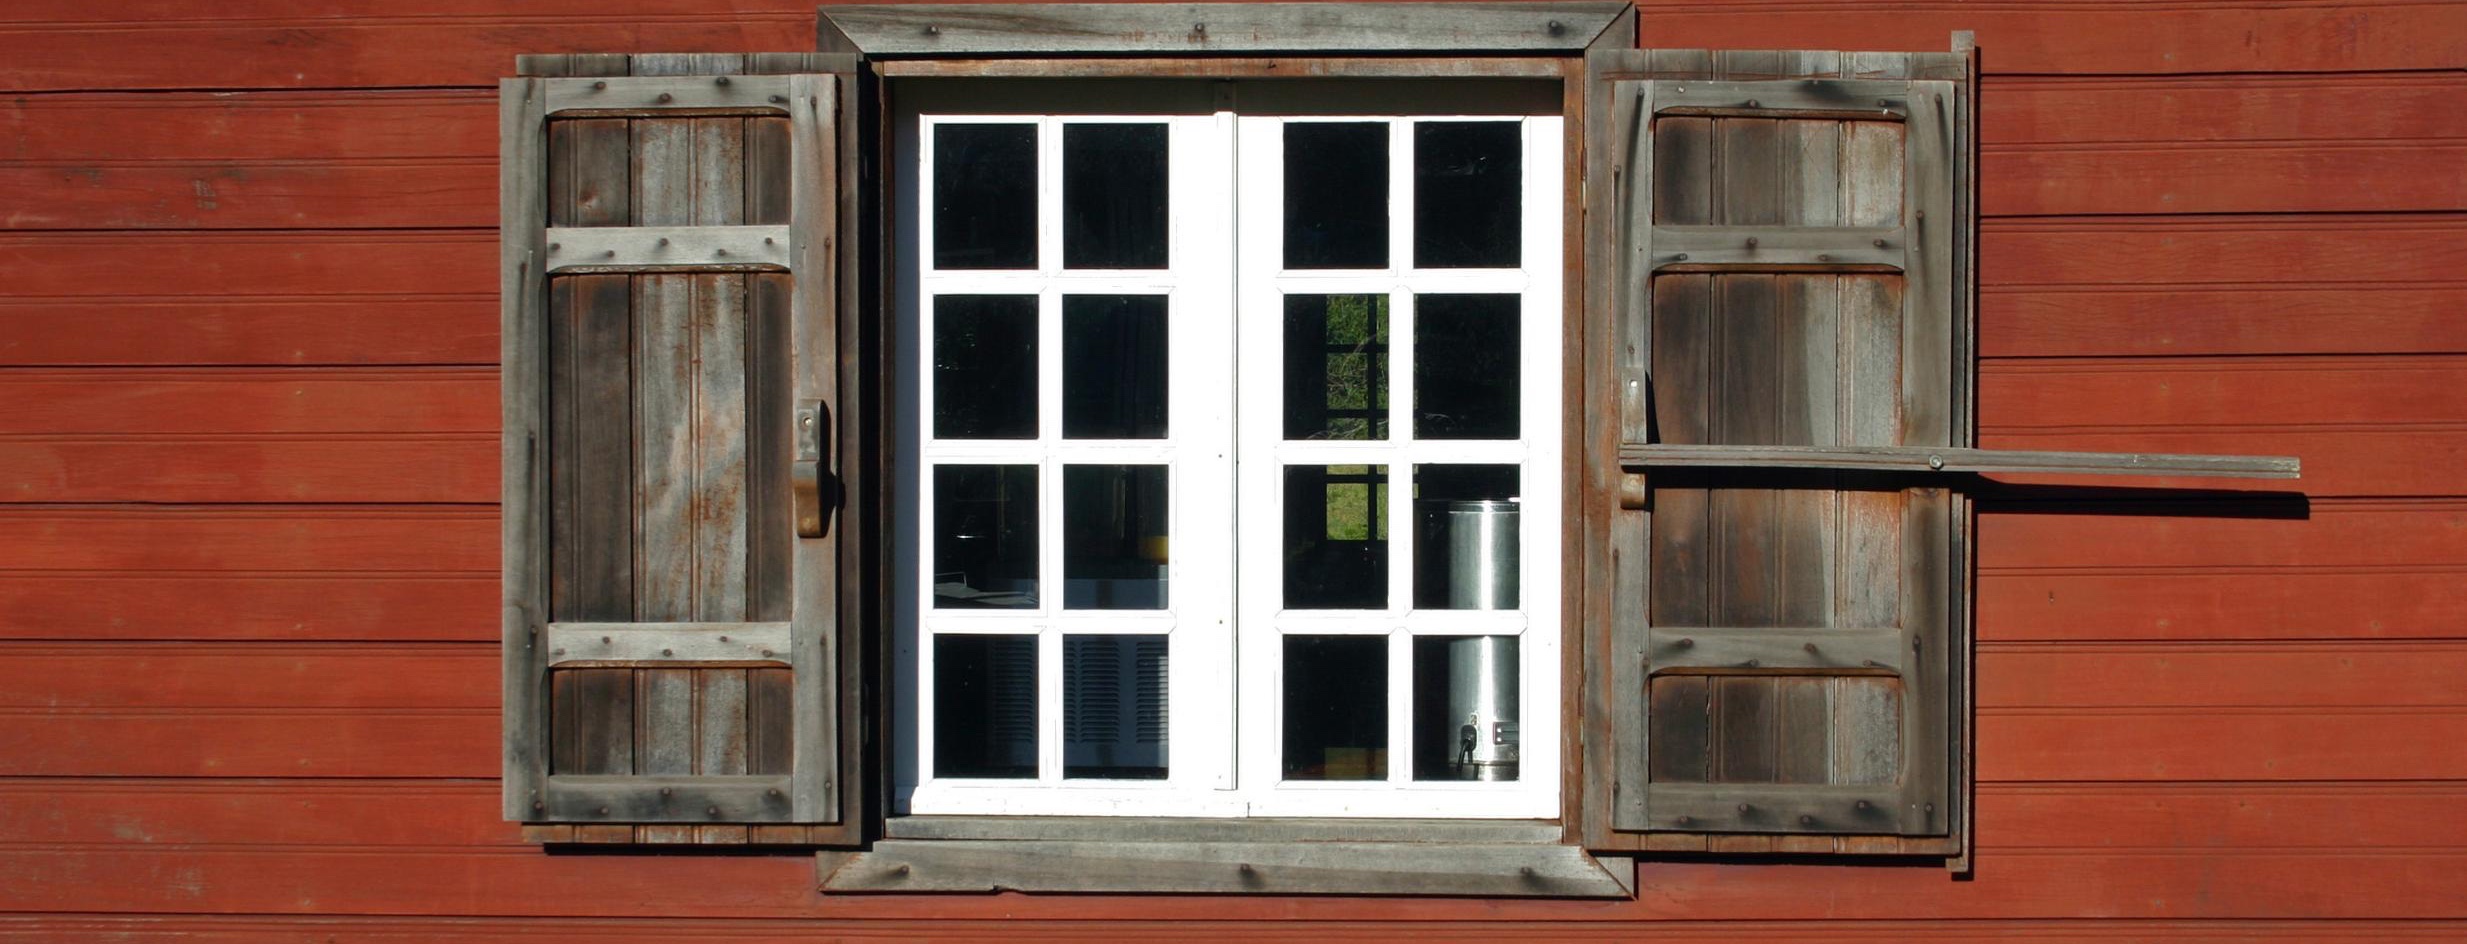 Fenêtre bois sur cabane de pêcheur bassin d'Arcachon